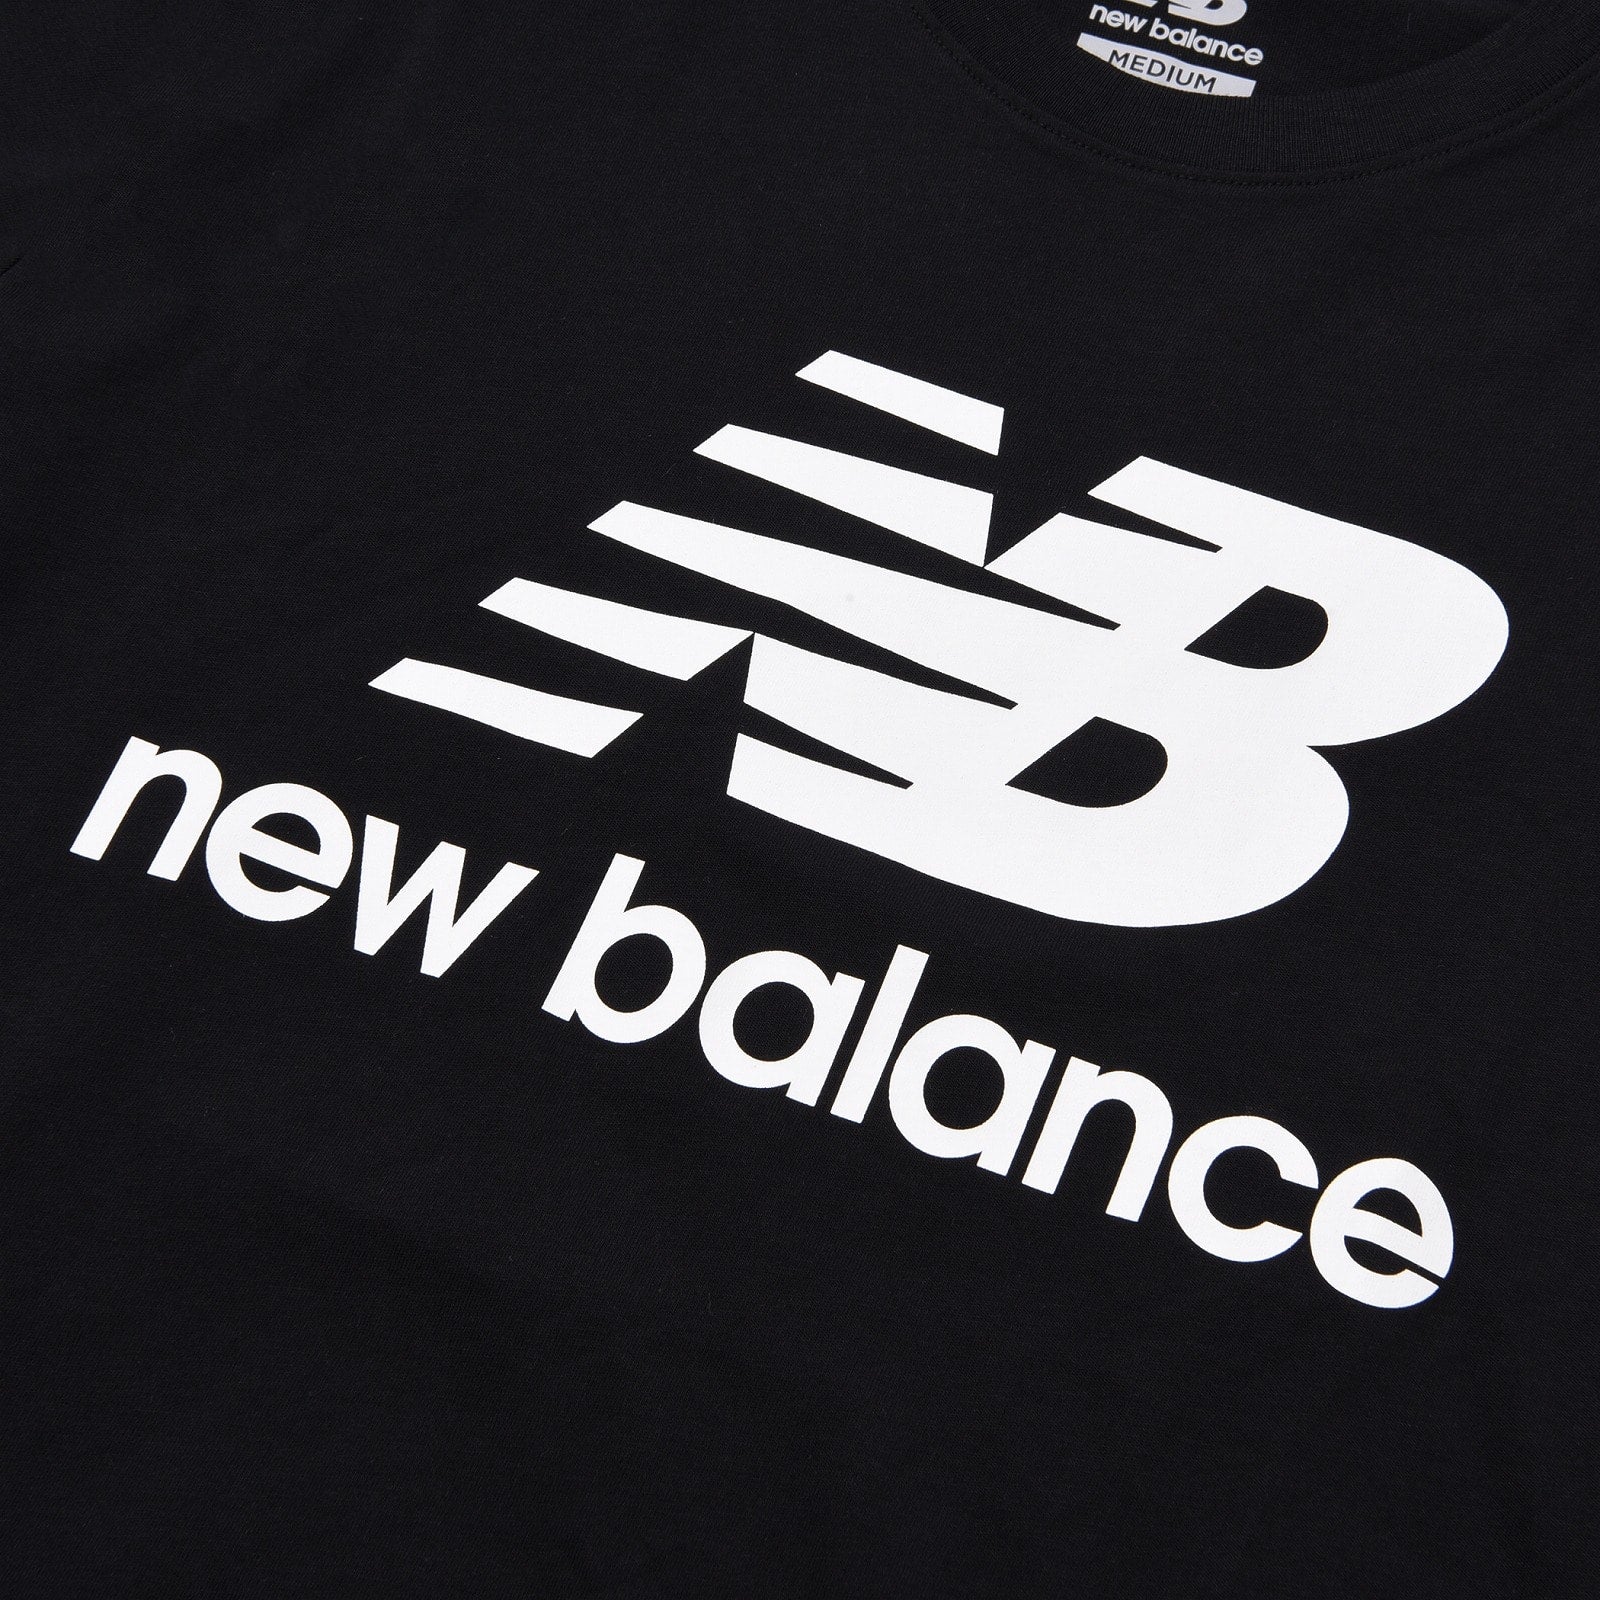 New Balance スタックドロゴショートスリーブTシャツ ブラック 2XL